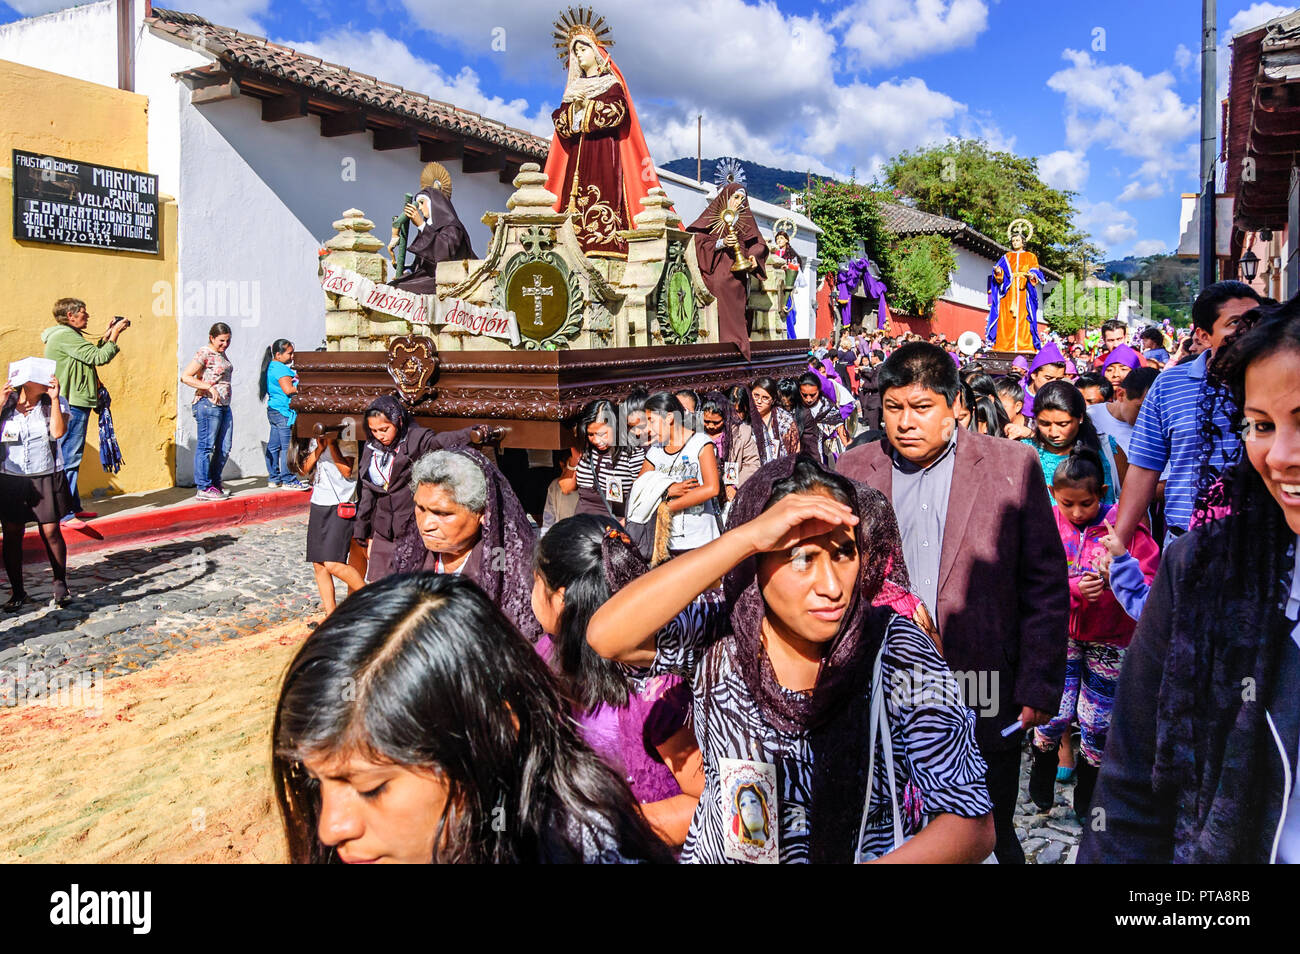 Antigua, Guatemala - Mar 1, 2015: Fastenzeit Prozession im UNESCO Weltkulturerbe mit dem berühmtesten Feierlichkeiten zur Karwoche in Lateinamerika. Stockfoto